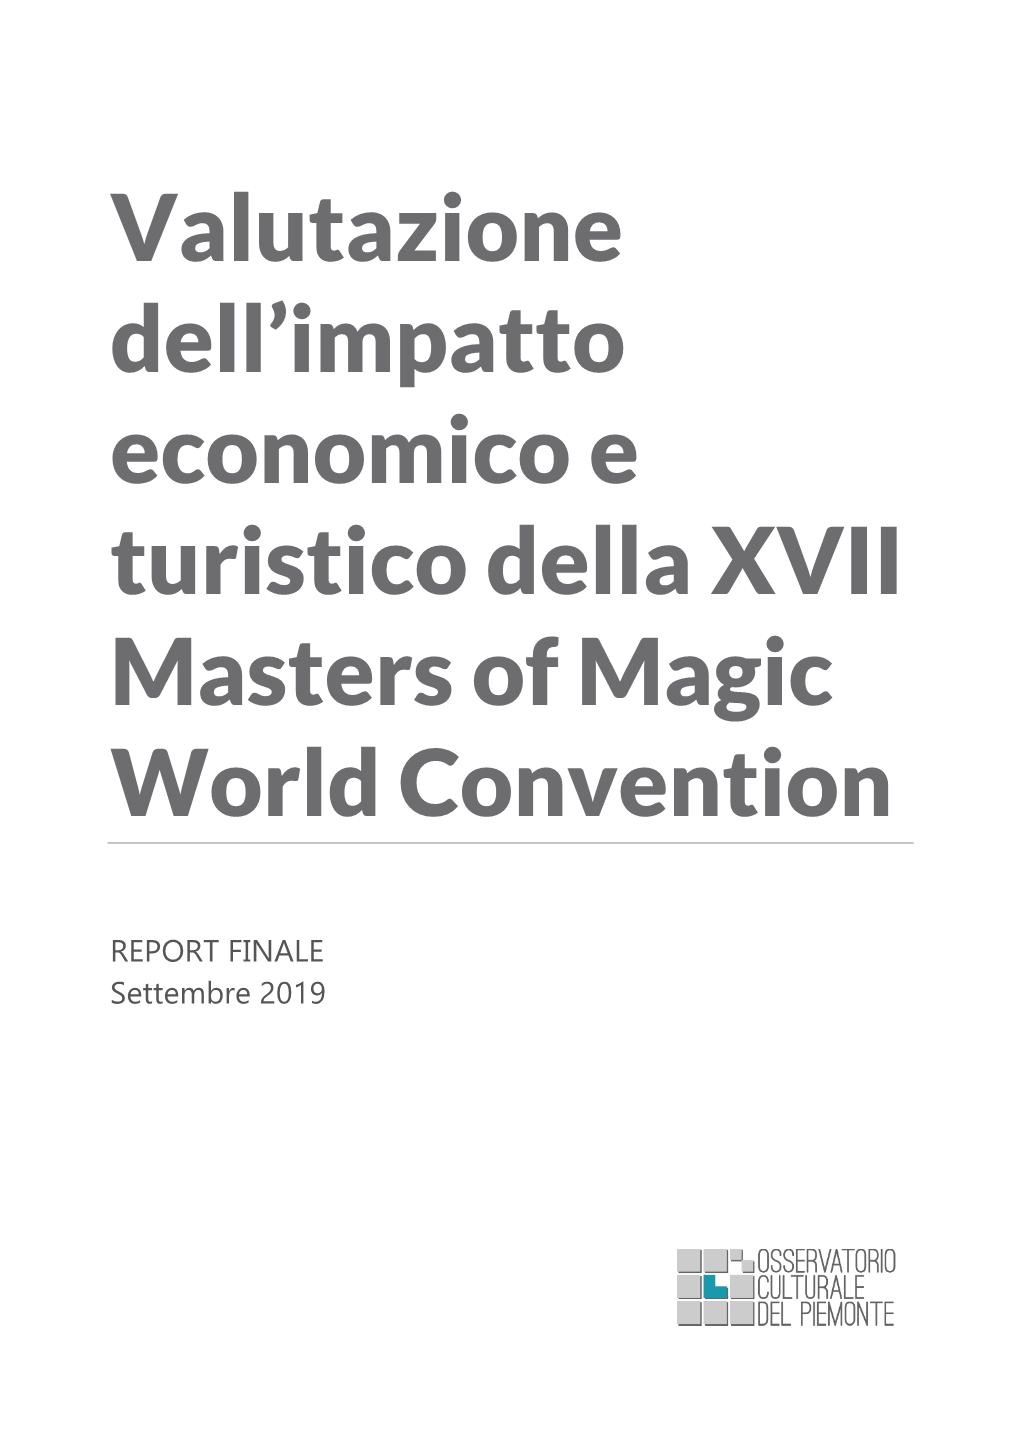 Valutazione Dell'impatto Economico E Turistico Della XVII Masters of Magic